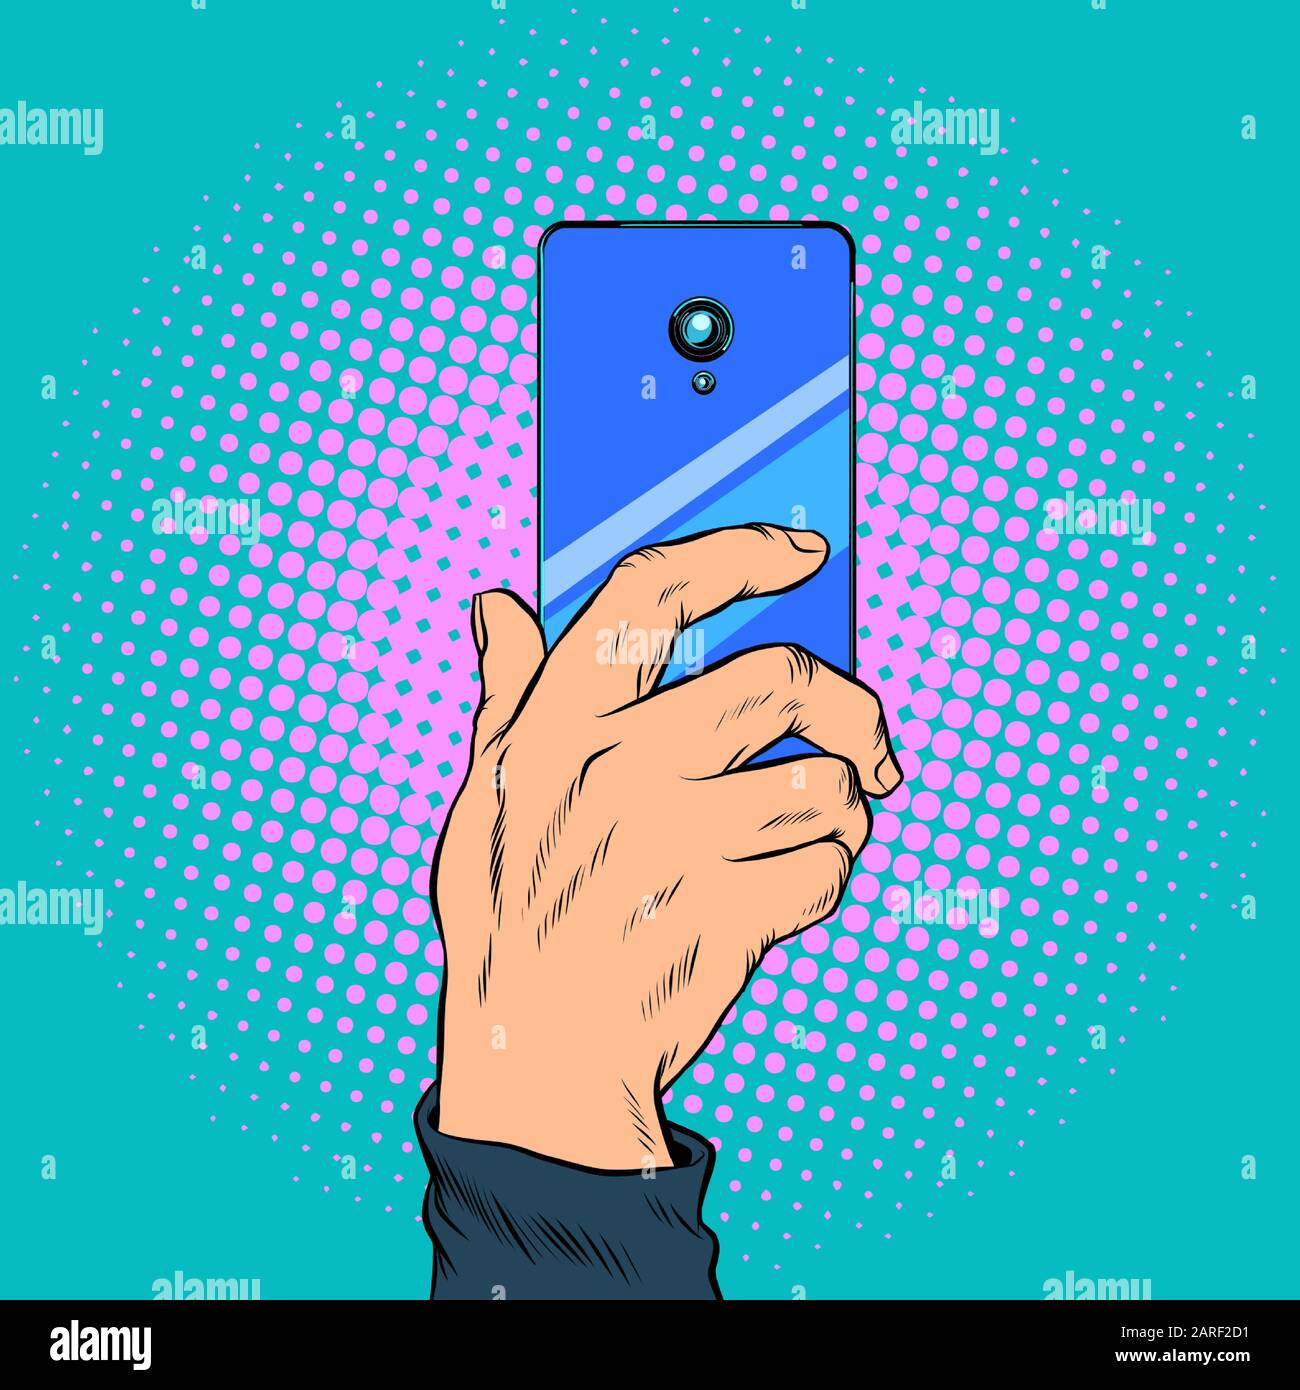 Nahaufnahme: Smartphone in der Hand nimmt ein Foto auf Stock Vektor